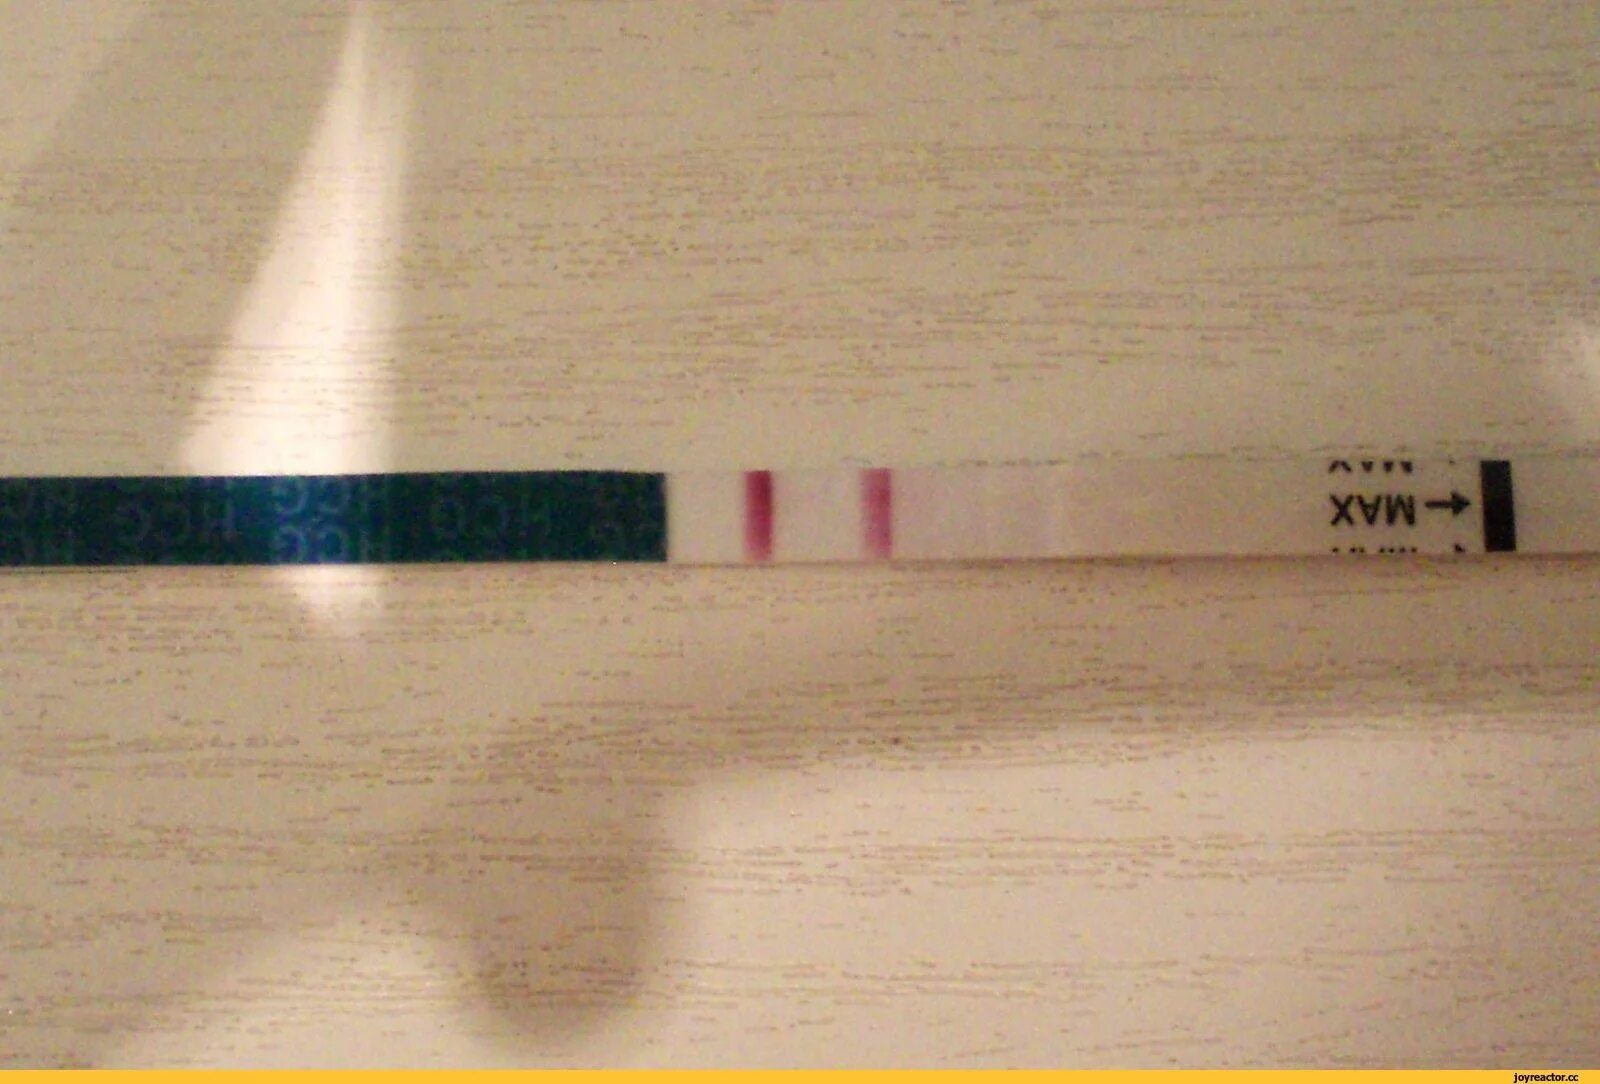 Тест на беременность полоска должна быть. Тест на беременность 2 poloska. Тест на беременность с 2 тест полосками. Тест на беременность 2 полоски фото. Тест на беременность 2 полосочки.